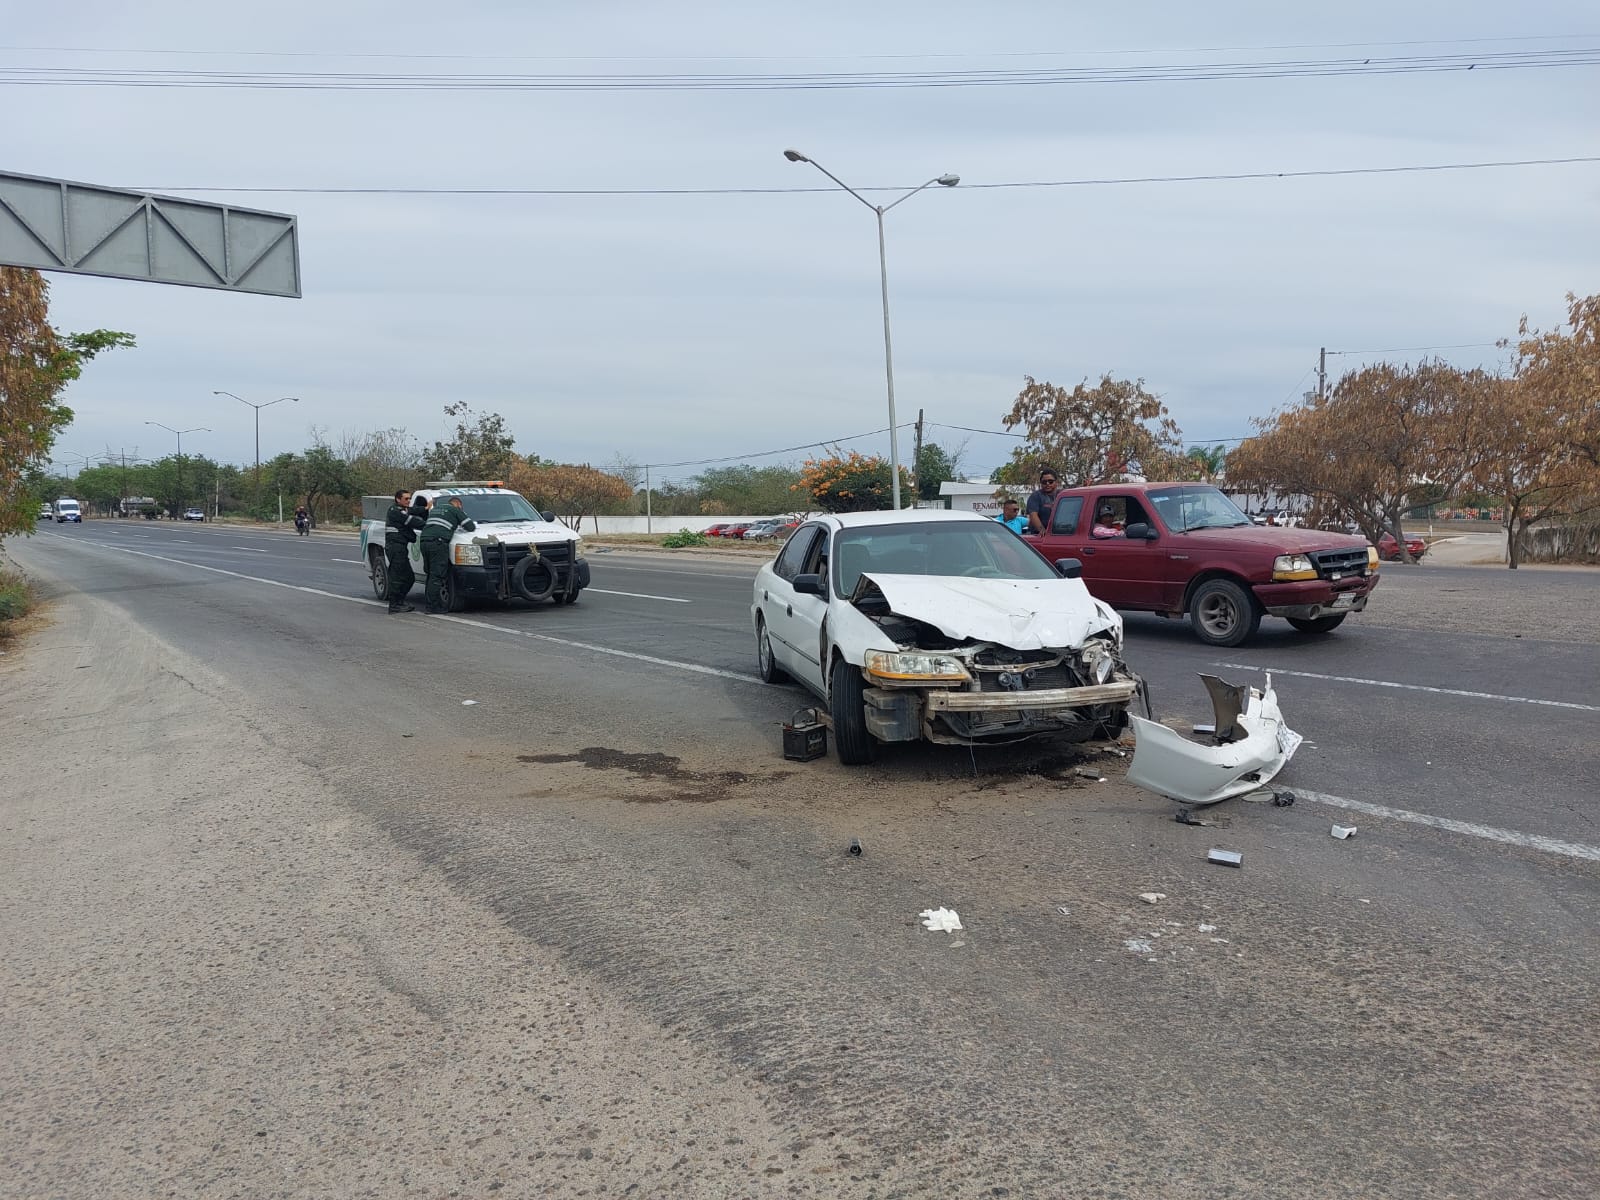 Carro chocado del frente tras un accidente en El Castillo, Mazatlán